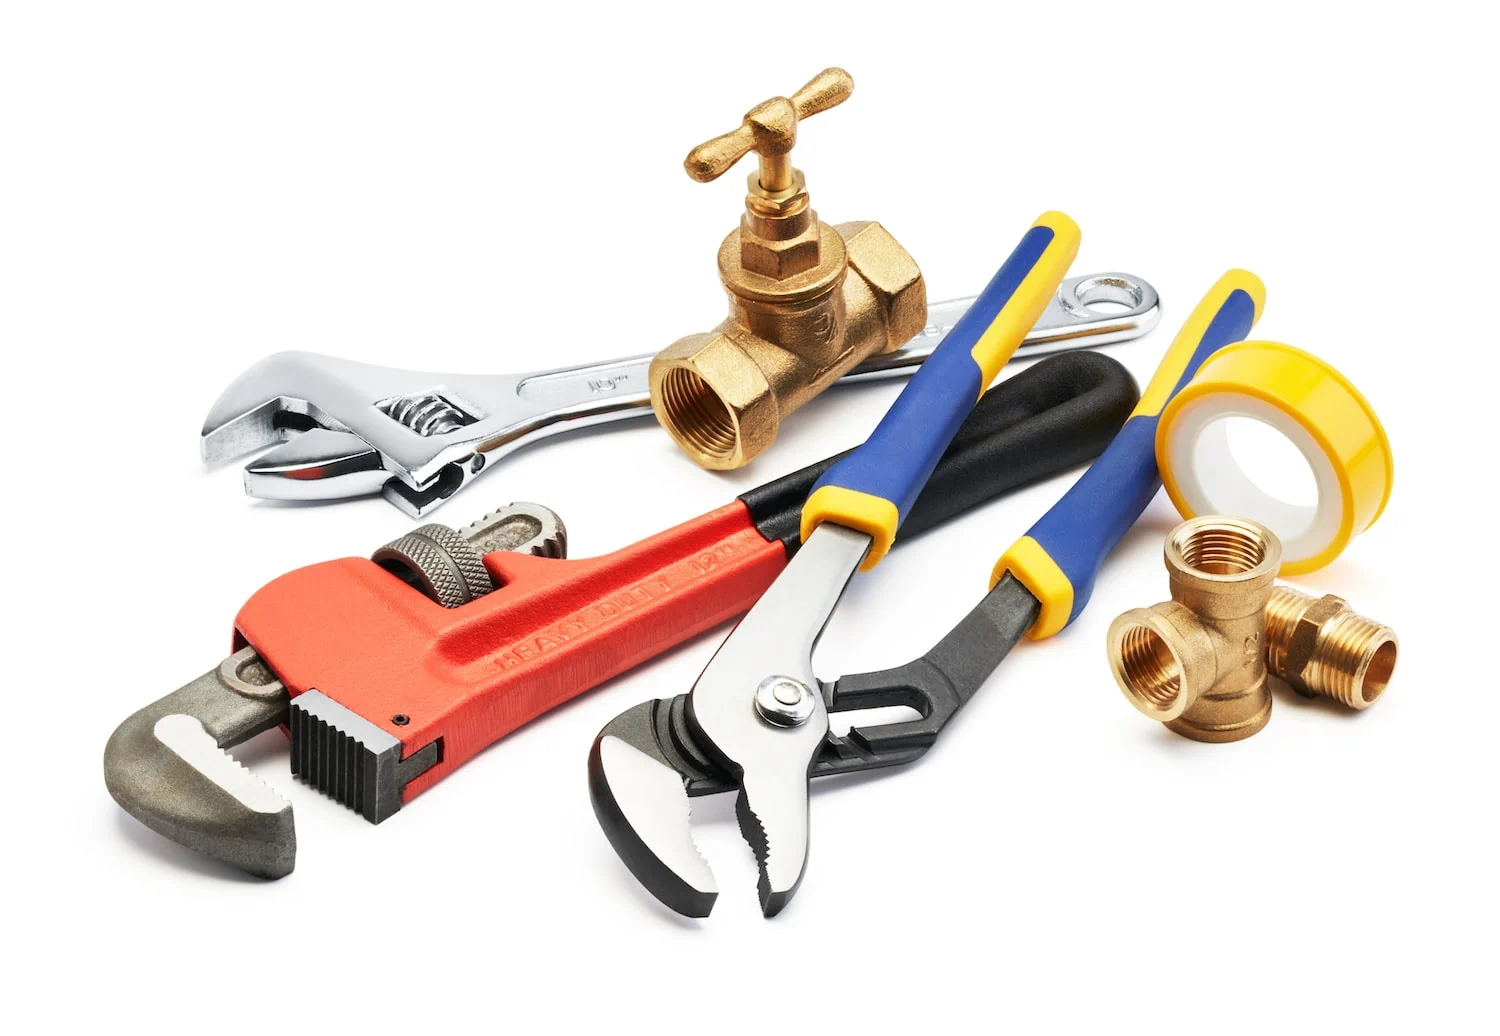 diy plumbing tool kit for beginners